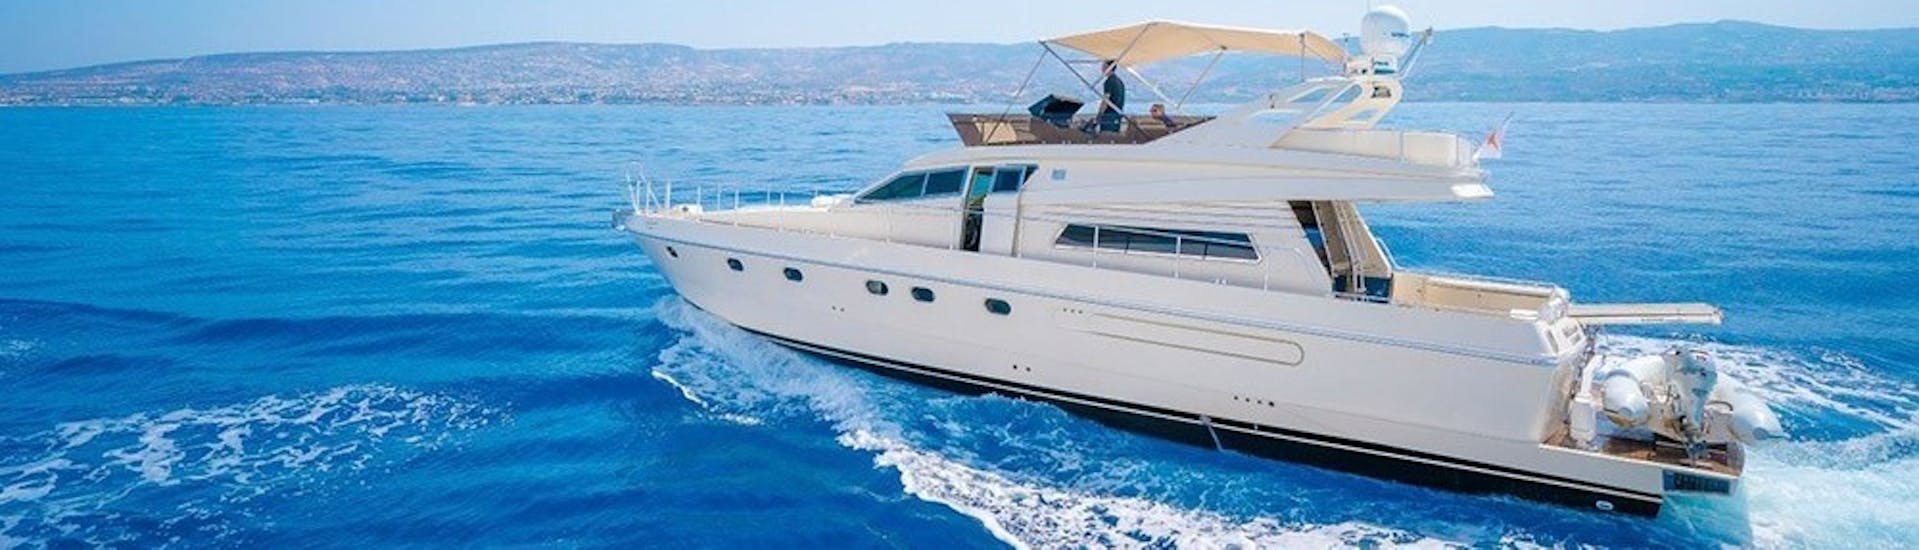 Nuestra embarcación "Diamond" que te llevará en un Paseo en yate al atardecer desde Protaras por la costa este - Solo adultos con Paphos Sea Cruises.